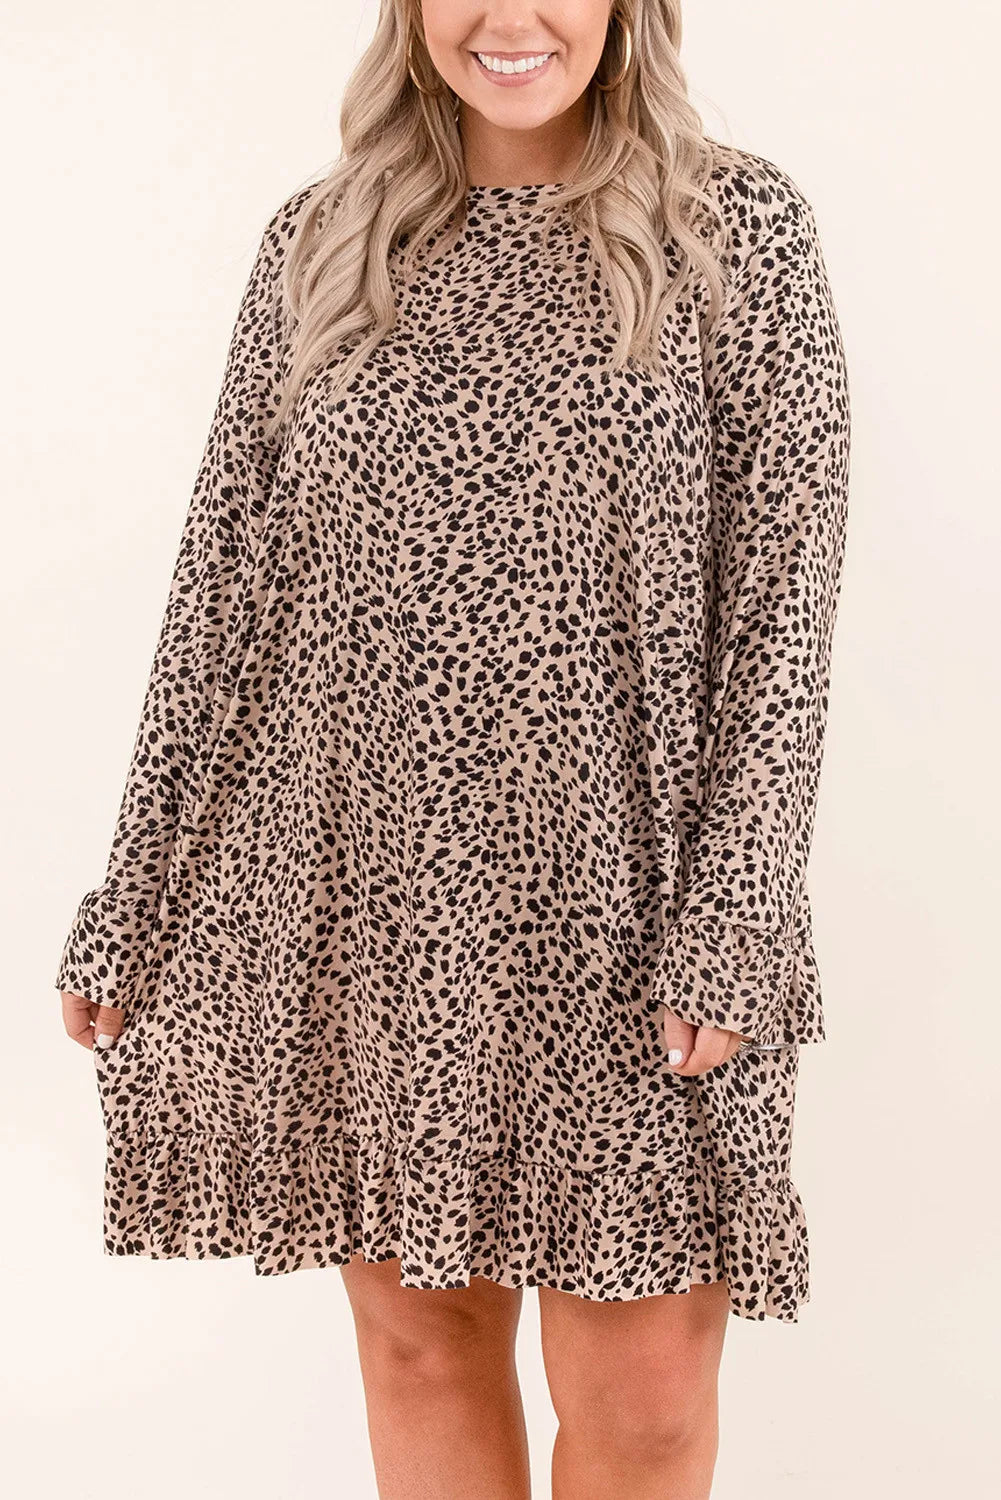 Leopard Ruffle Curvy Dress - sale